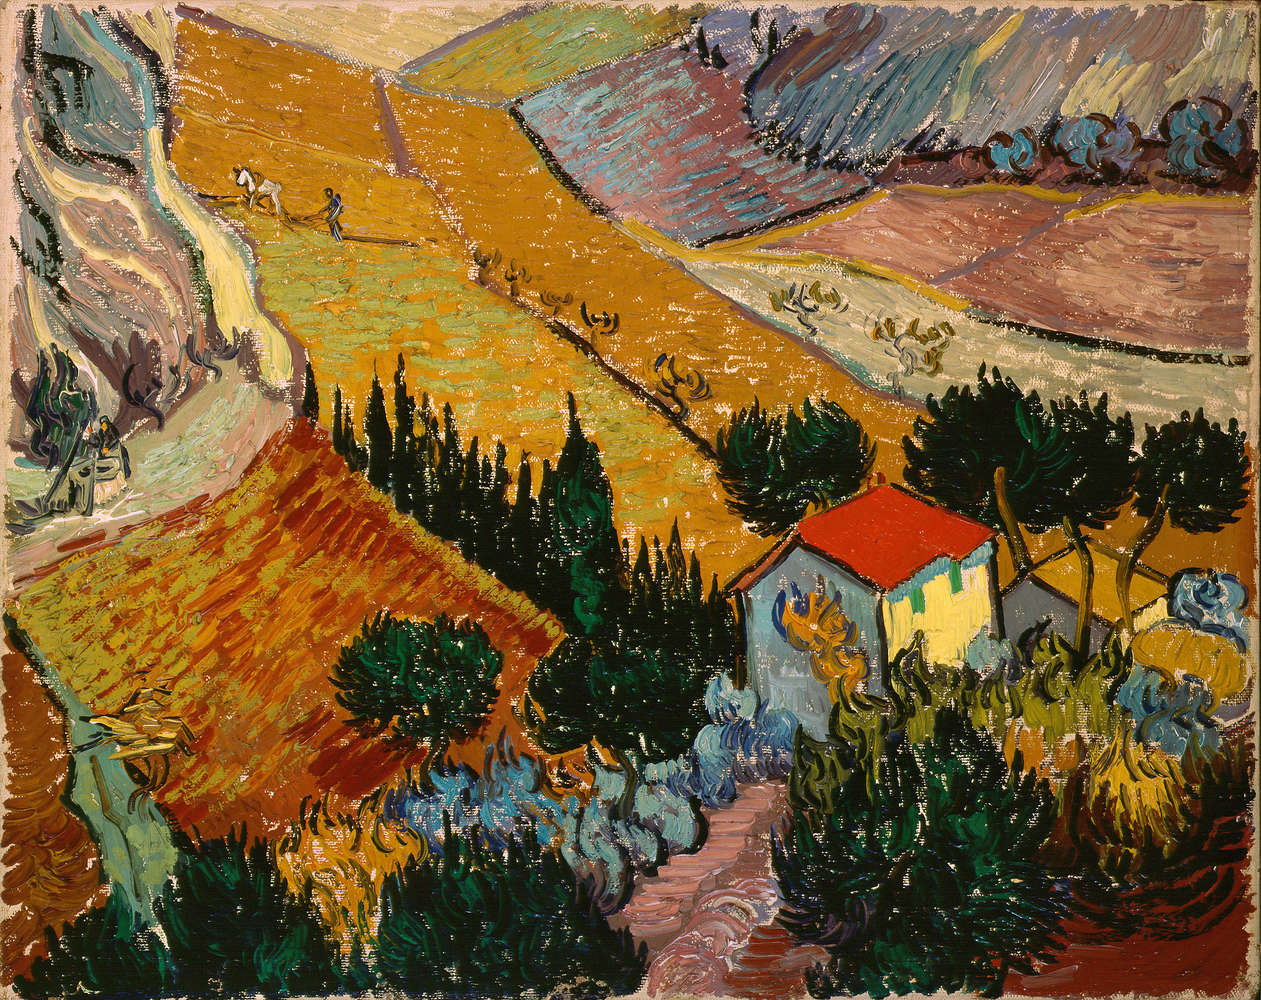             Papier peint panoramique "Paysage avec maison et laboureur" de Vincent van Gogh
        